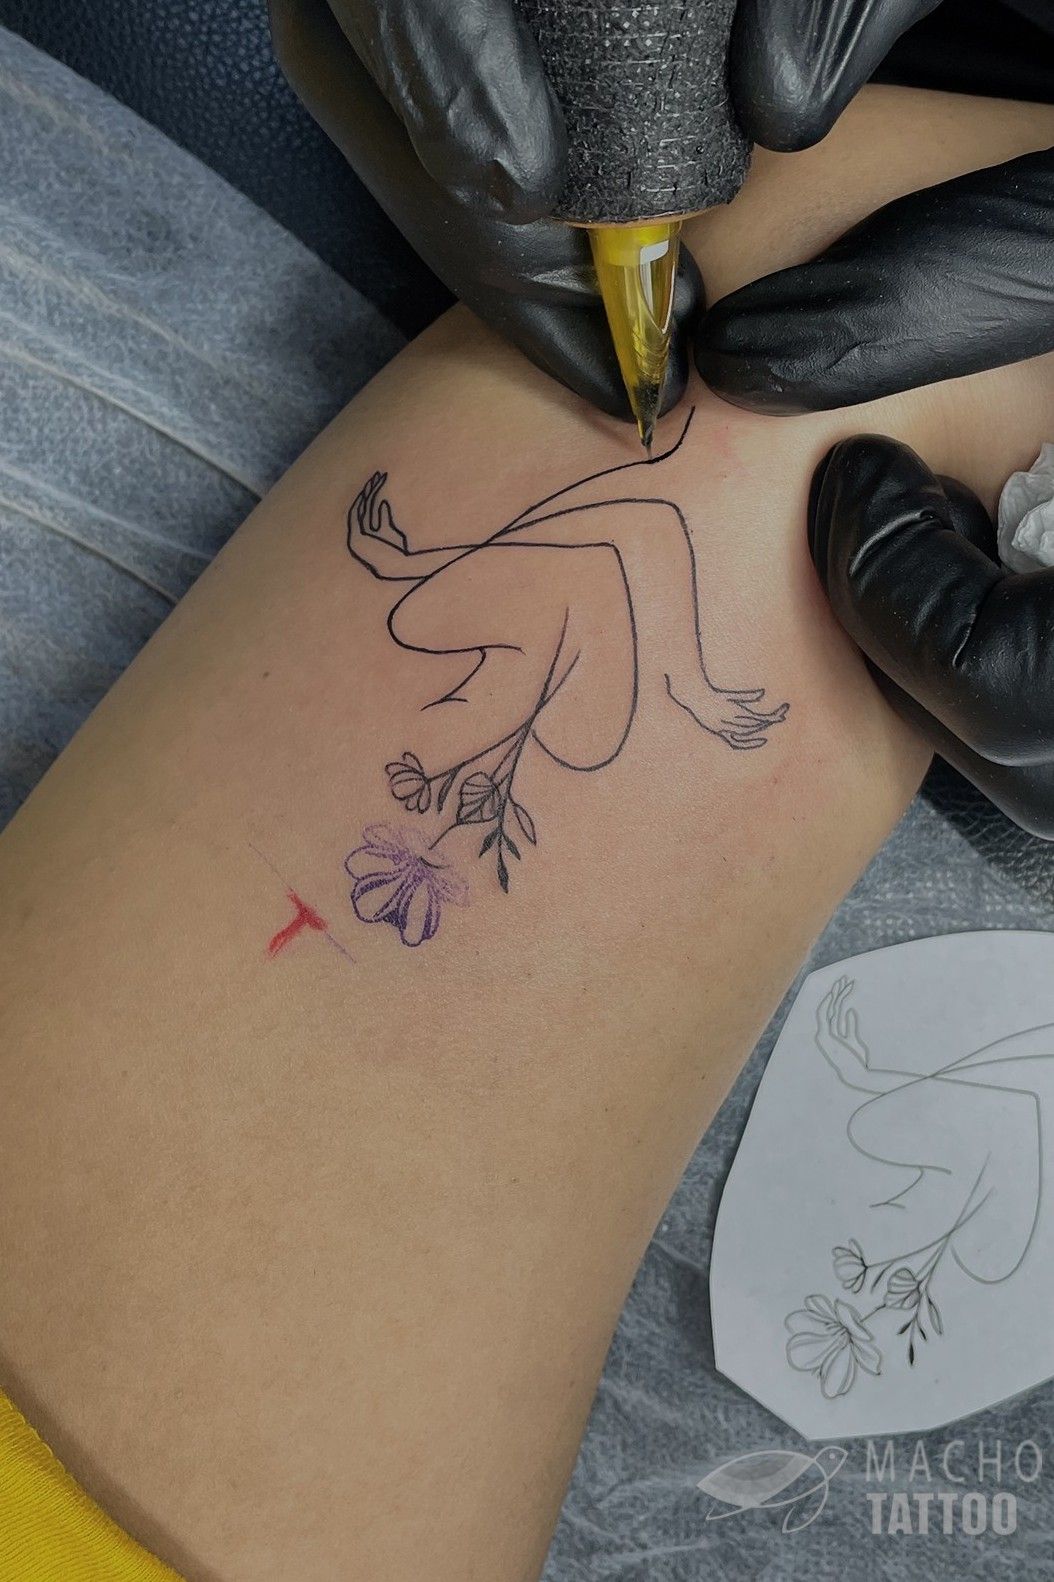 Minimalist Women Hand Tattoo Ideas | Line tattoos, Silhouette tattoos,  Tattoos for women